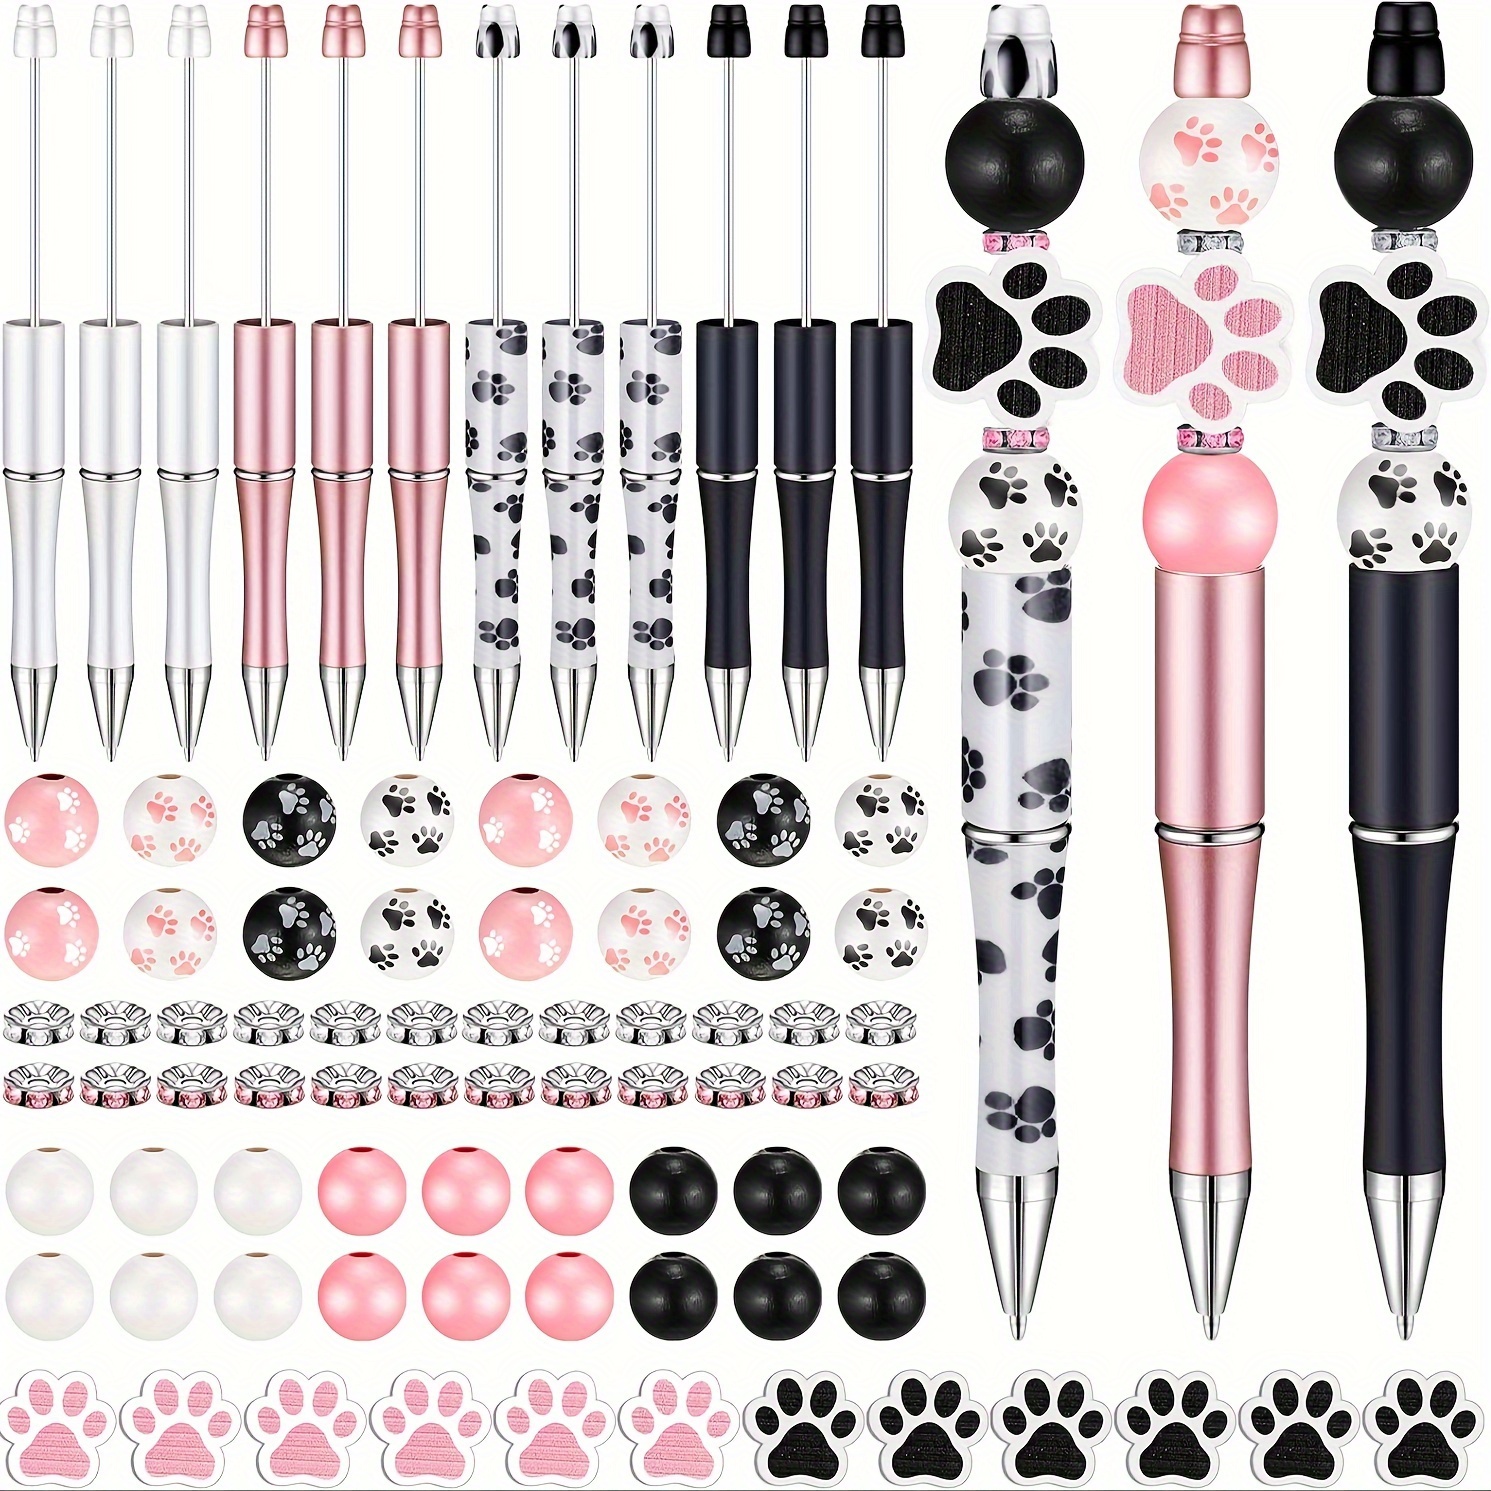 

58pcs Ensemble de stylos à bille en plastique, comprenant 8 stylos à bille, 34 perles en bois et 16 perles d'espacement, ensemble de bricolage cadeau fournitures scolaires et de bureau